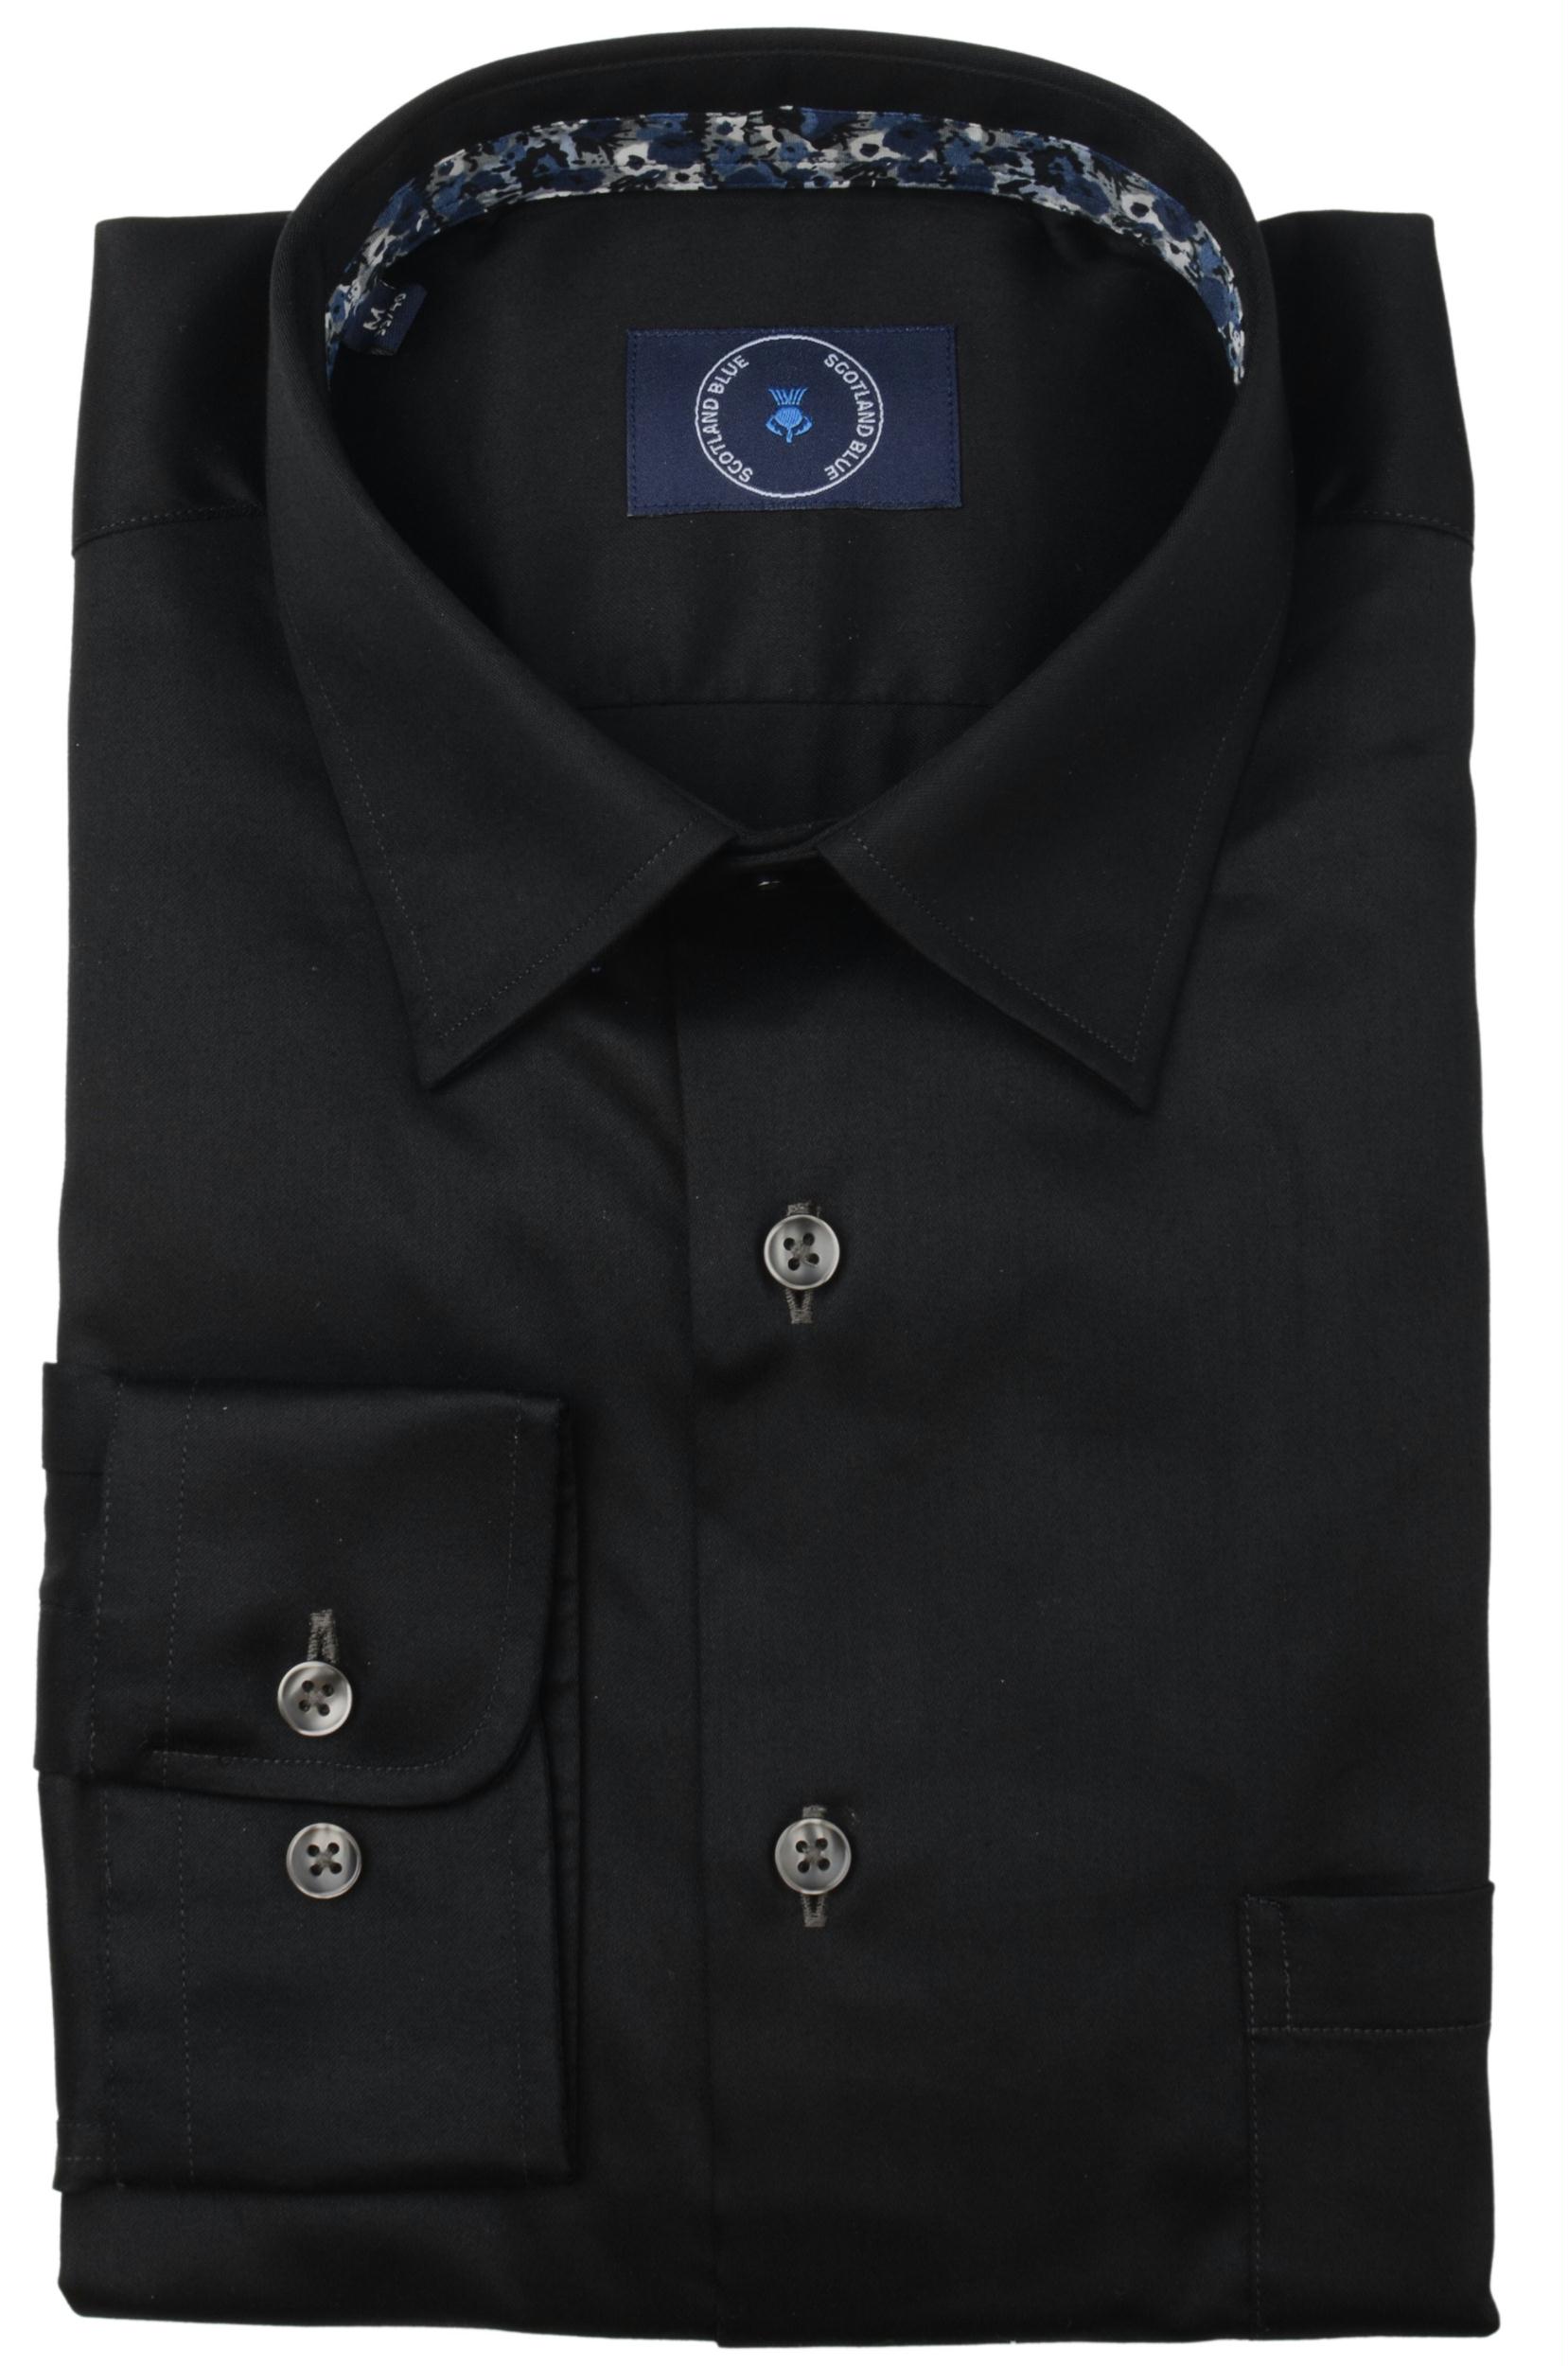 Scotland Blue Casual hemd lange mouw Zwart Dean 2-tone Twill Shirt Sprea 21307DE35SB/980 antra